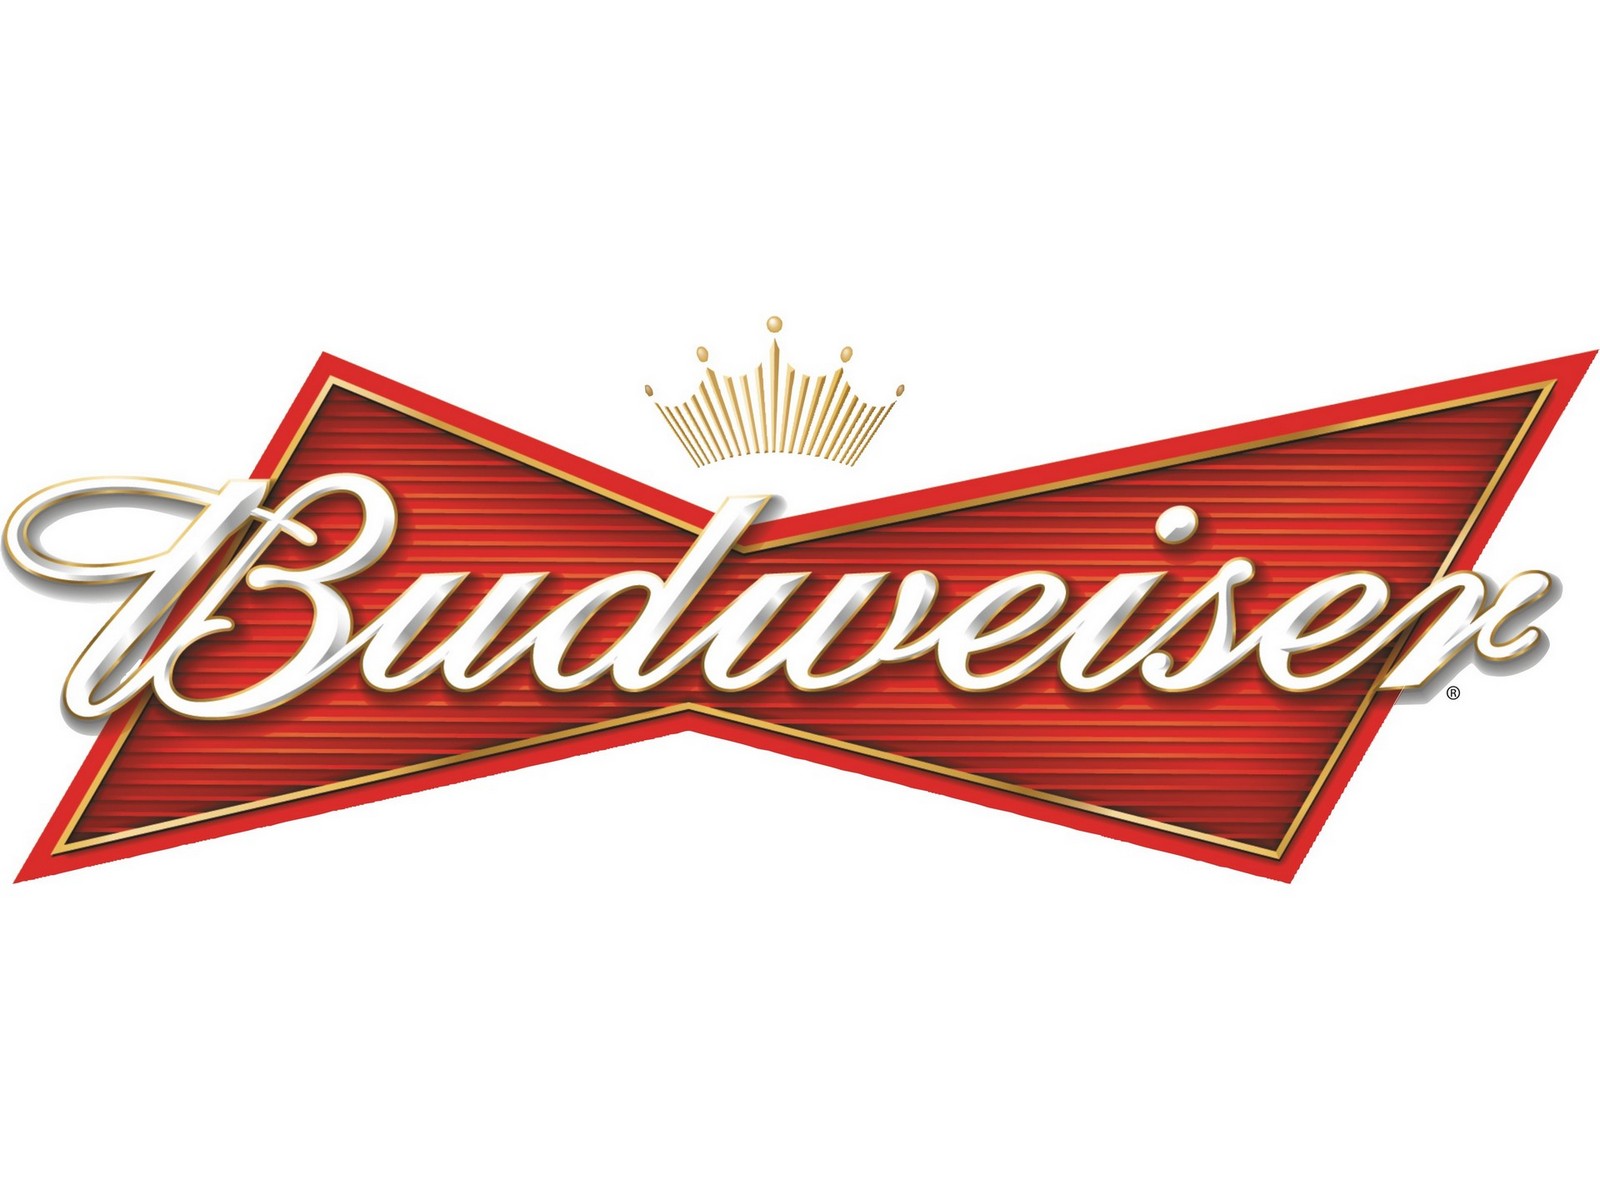 Budweiser Logo Standard Image Brands Ads Beer